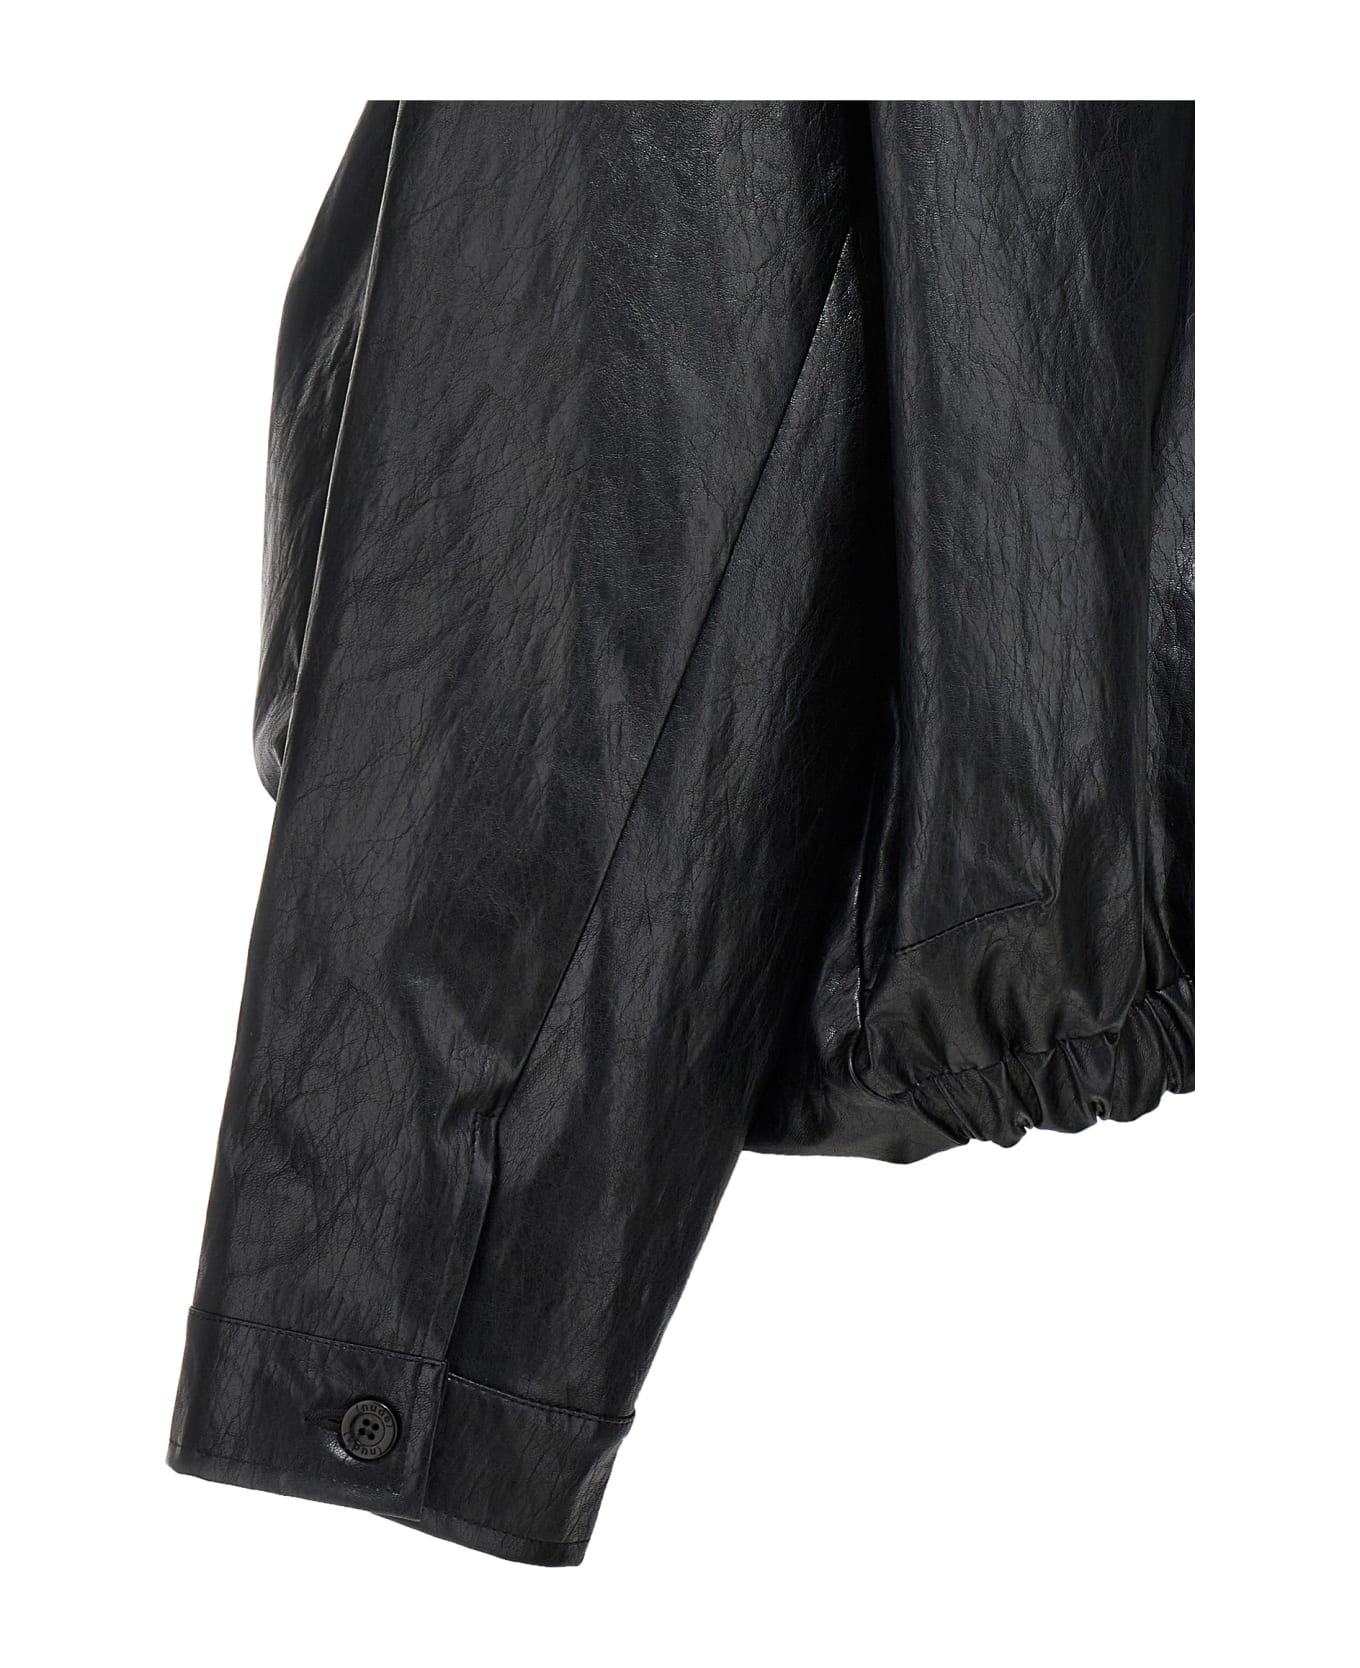 (nude) Faux Leather Bomber Jacket - Black   レザージャケット